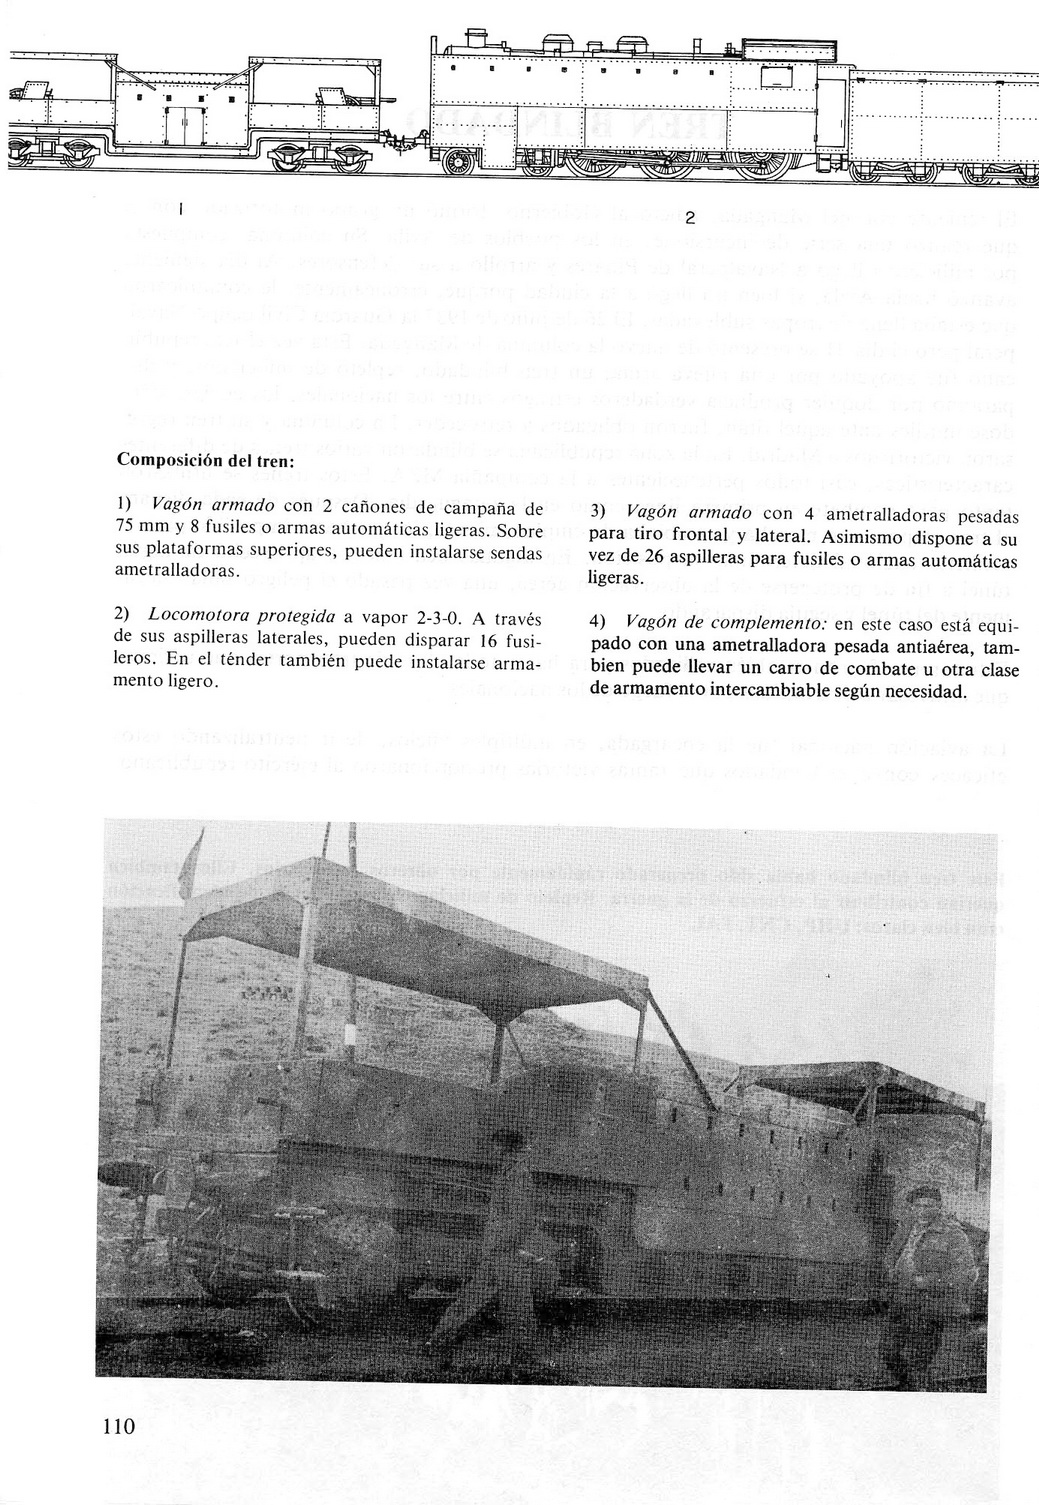 Carros De Combate Y Vehiculos Blindados De La Guerra 1936 1939 [F.C.Albert 1980]_Страница_108.jpg